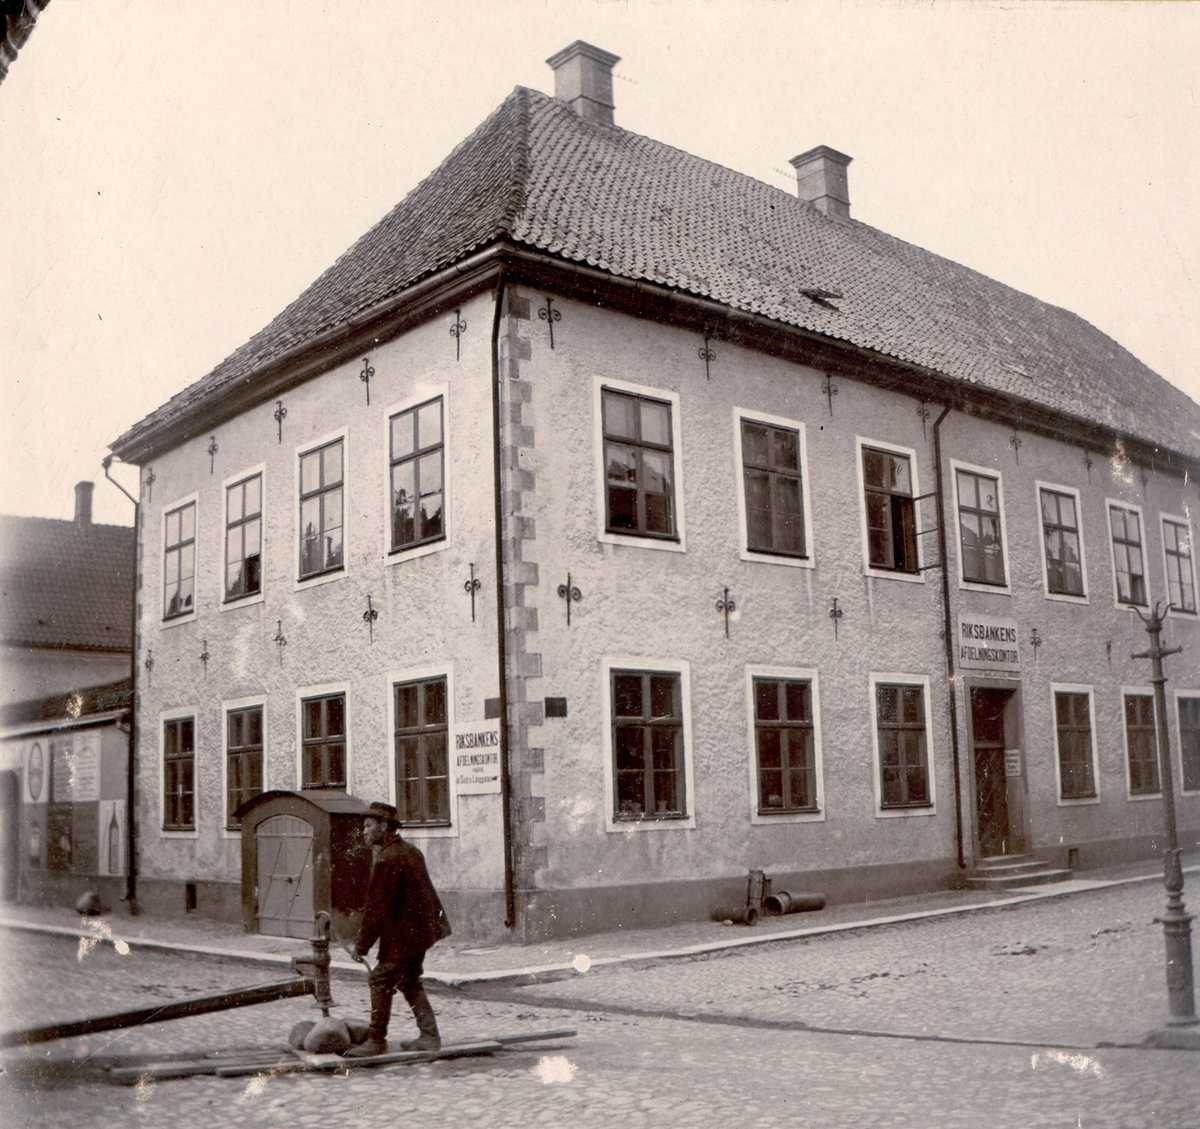 Rosenlunska huset. Byggt för borgmästare Erik Rosenlund. Kvarnholmens äldsta stenhus, färdigt 1655. Ritat av Nicodemus Tessin d ä.